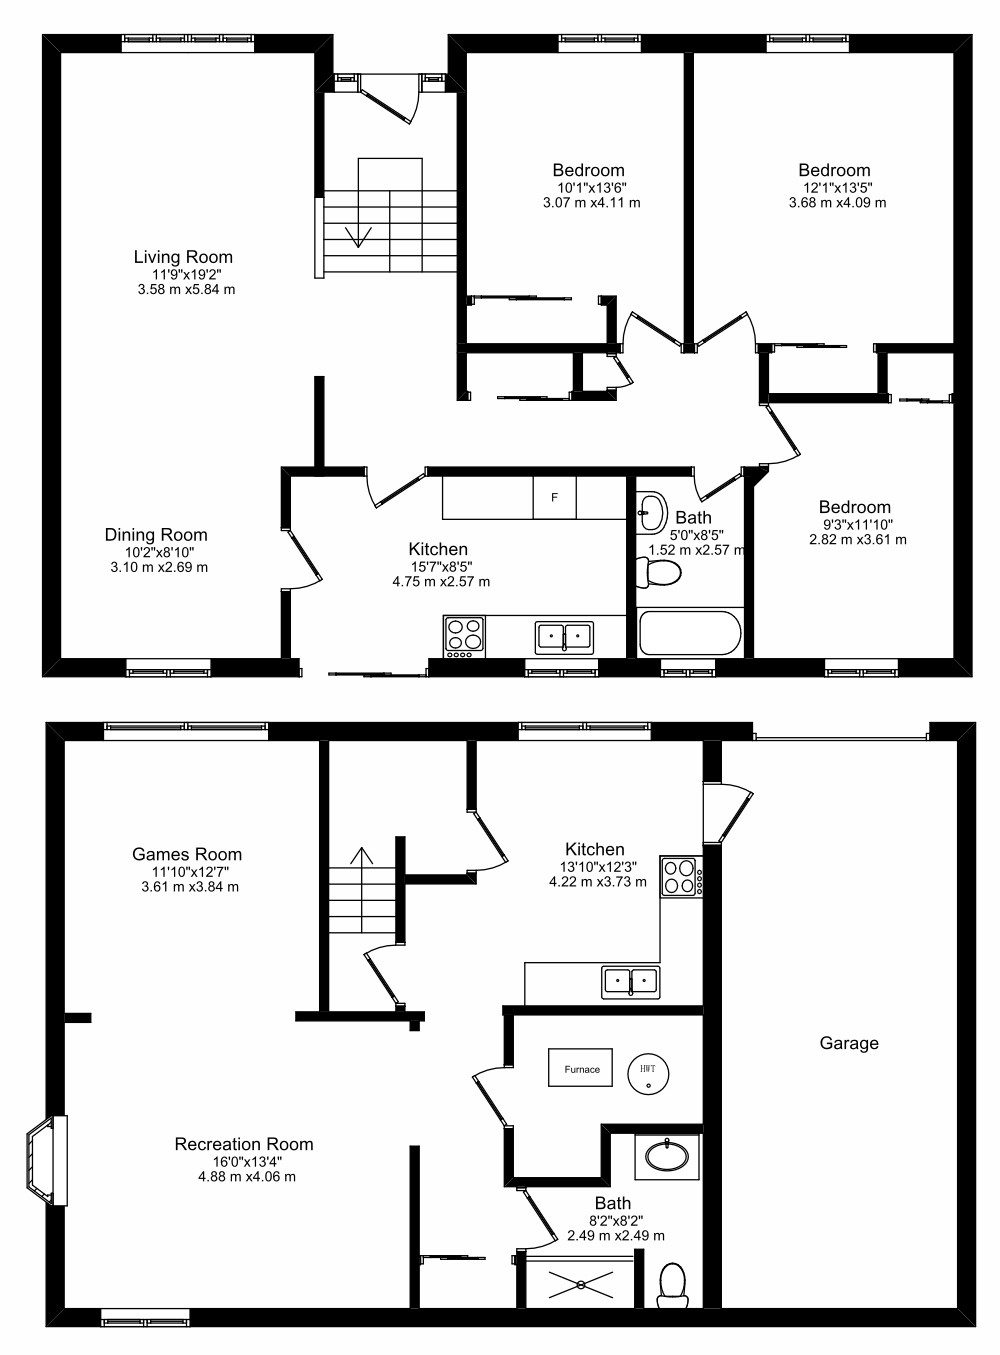 152 Valleyview Crescent - Floor Plans